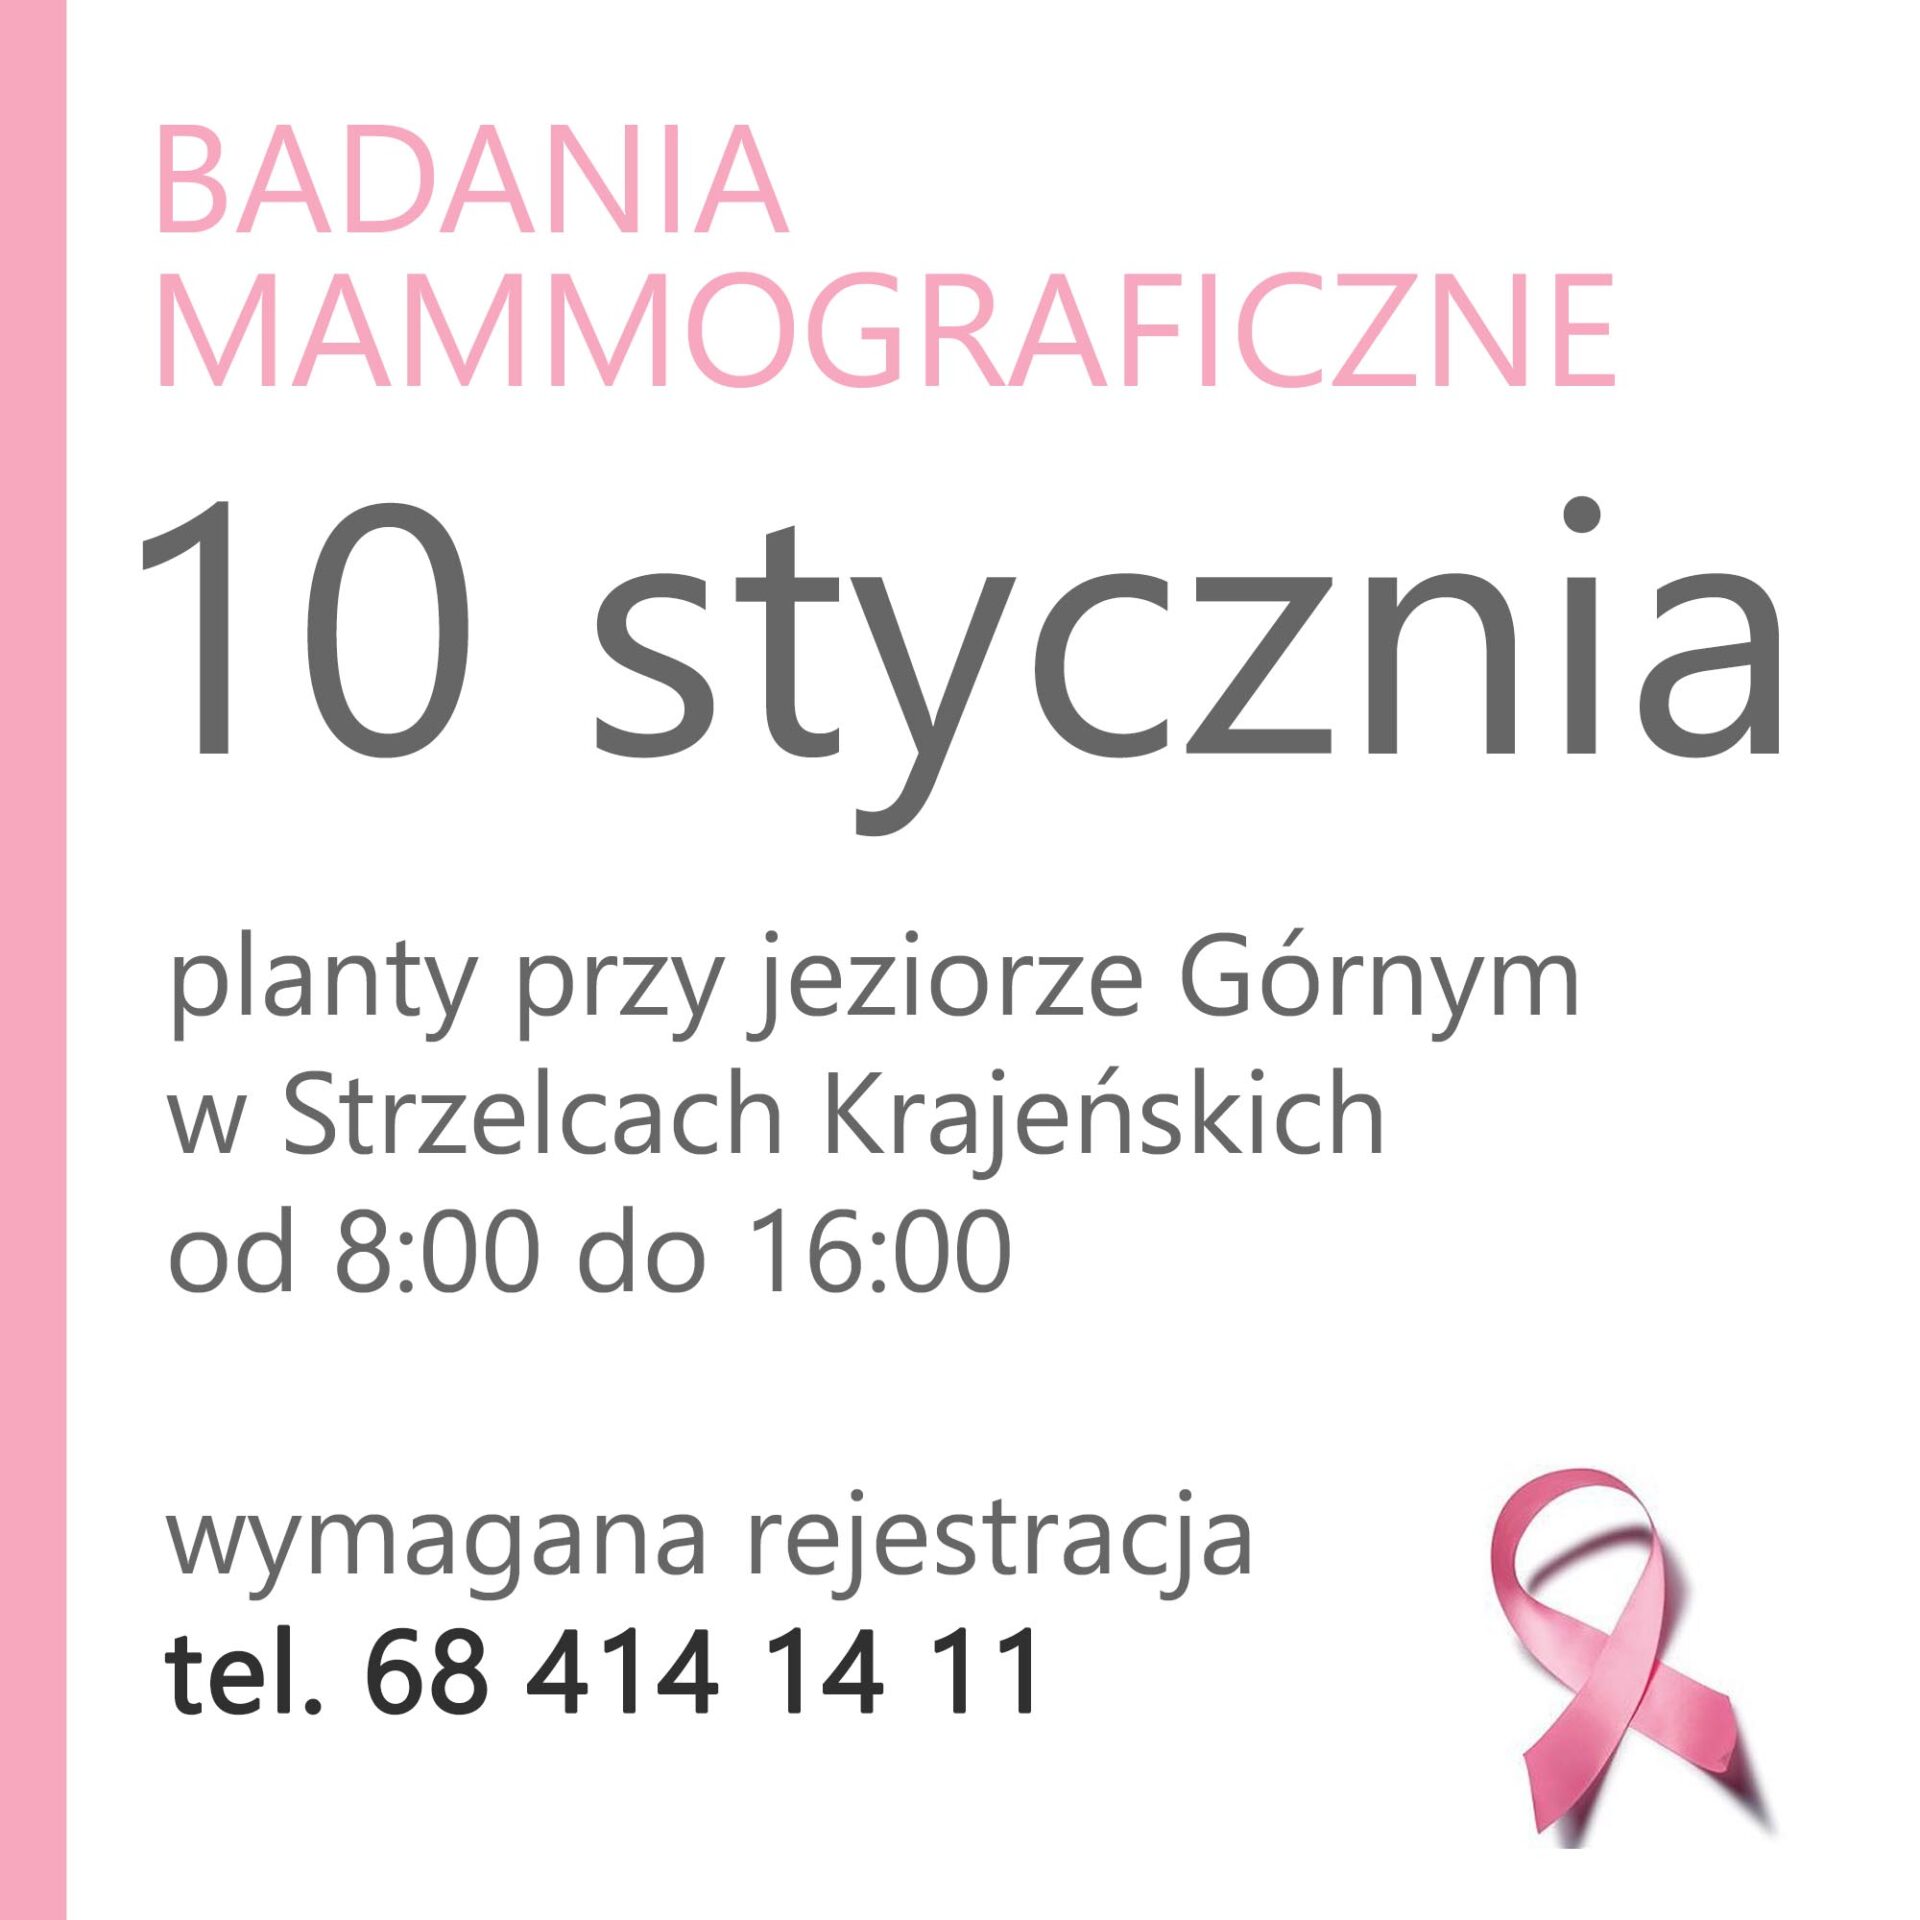 Bezpłatna mammografia - 10 stycznia 2022